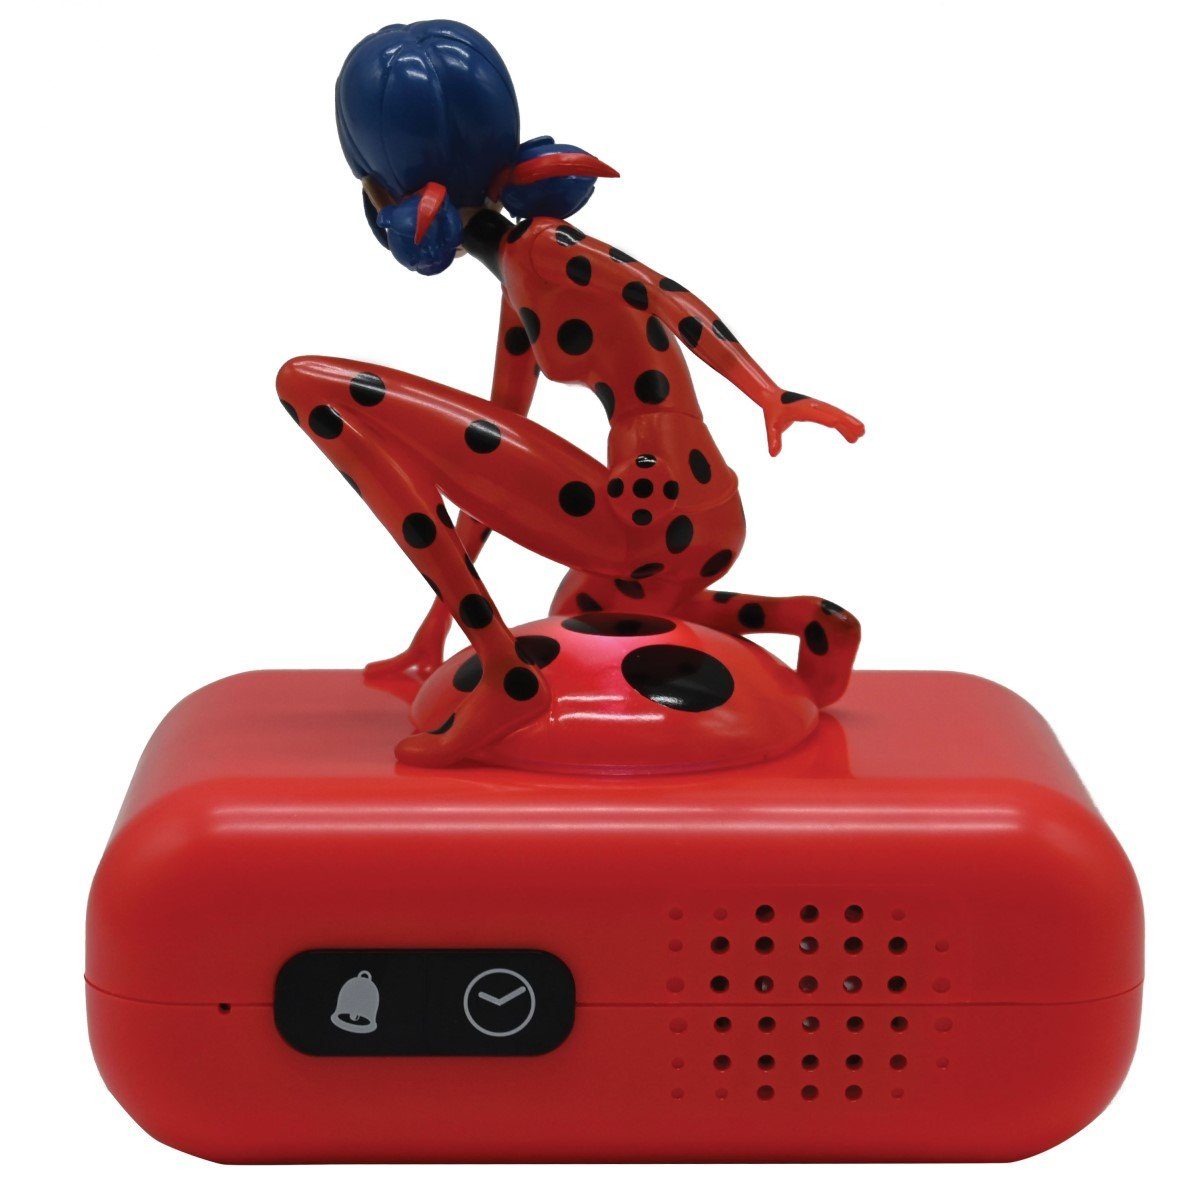 Klingeltönen mit besonderen Lexibook® Miraculous Kinderwecker Wecker Ladybug 3D und